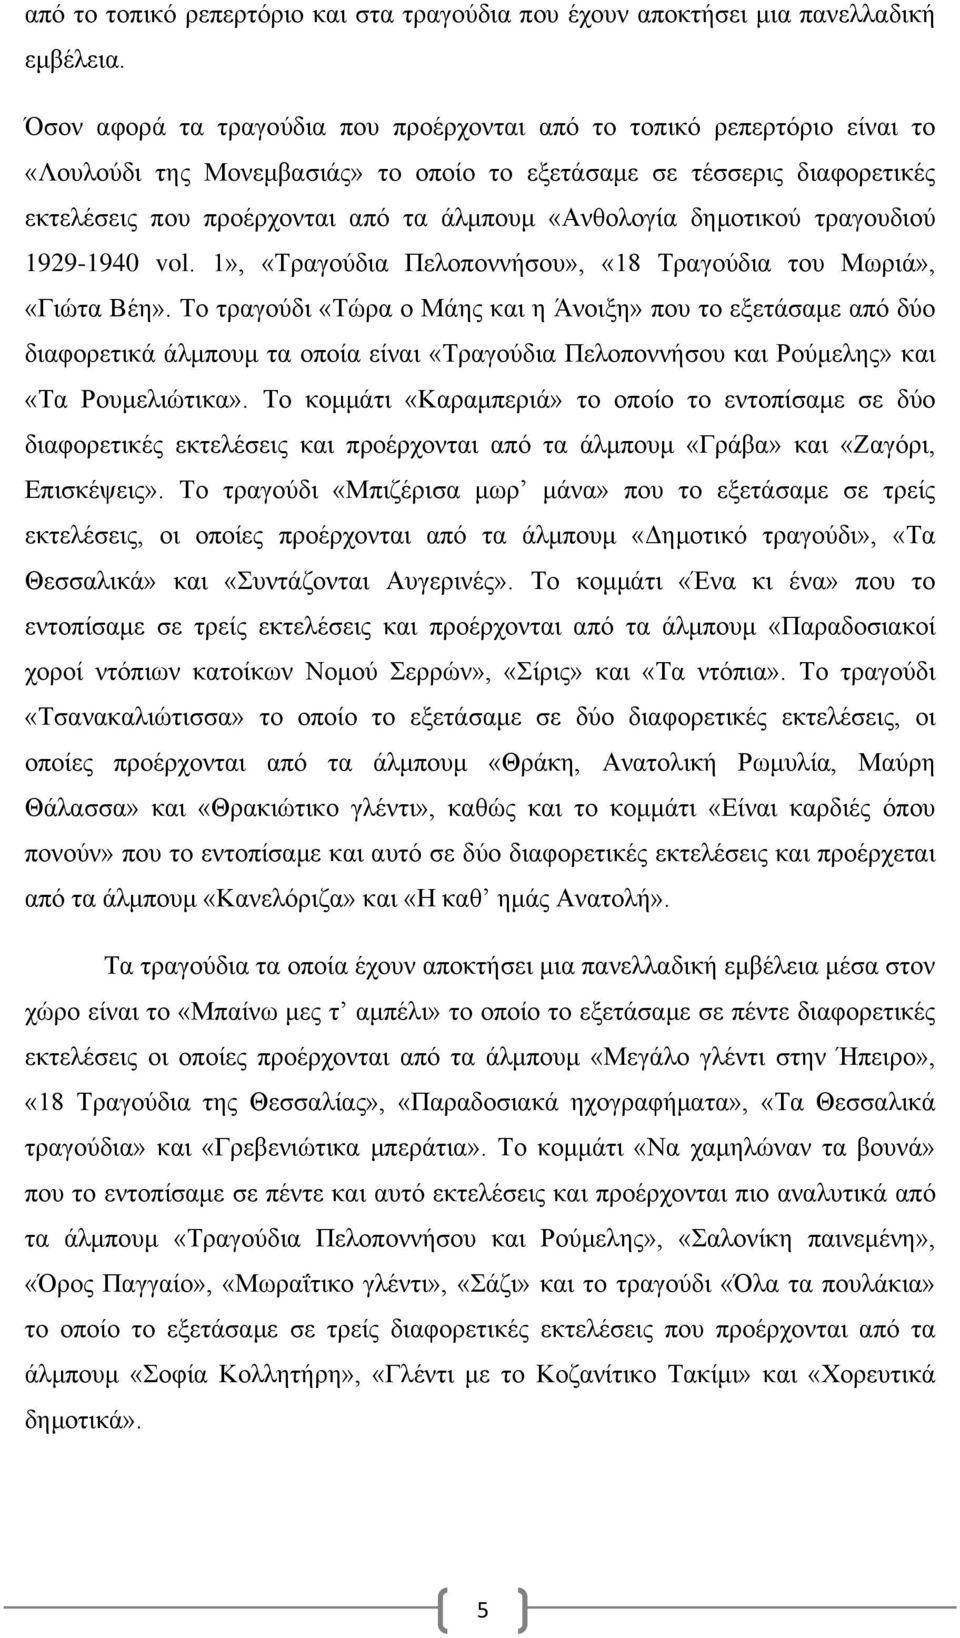 «Ανθολογία δημοτικού τραγουδιού 1929-1940 vol. 1», «Τραγούδια Πελοποννήσου», «18 Τραγούδια του Μωριά», «Γιώτα Βέη».